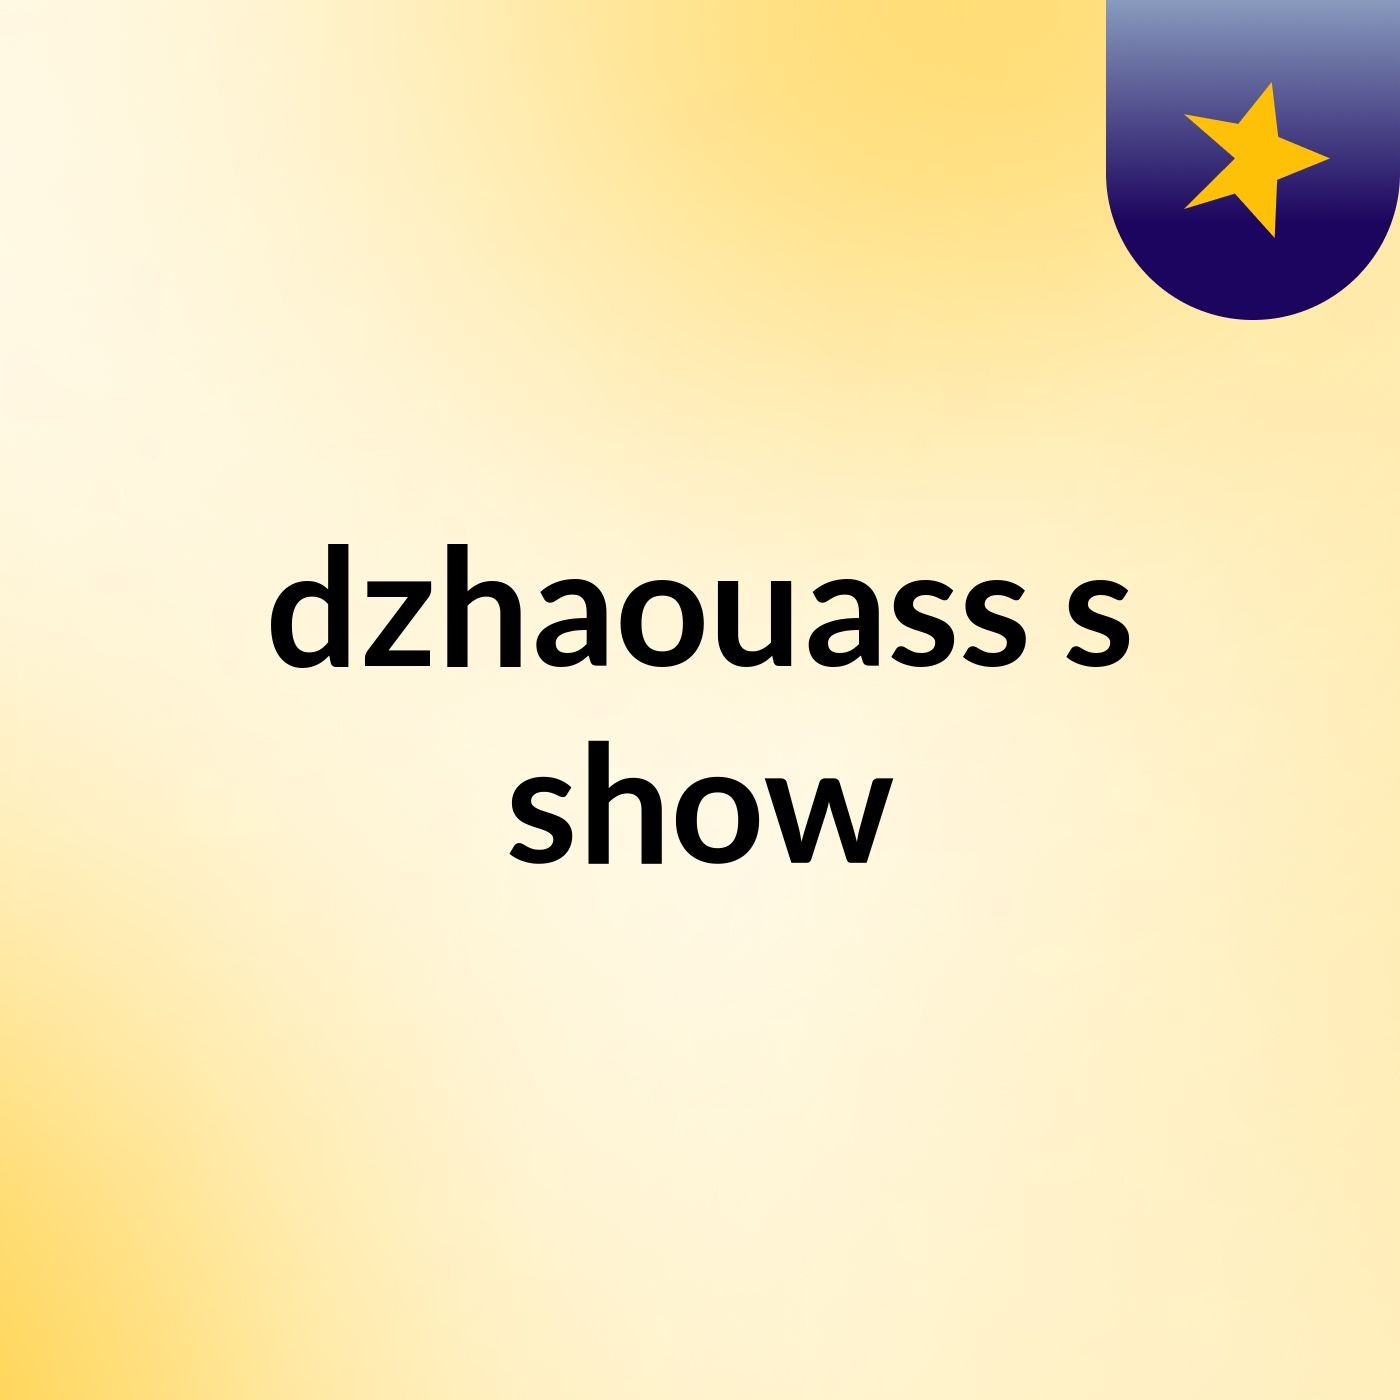 dzhaouass's show